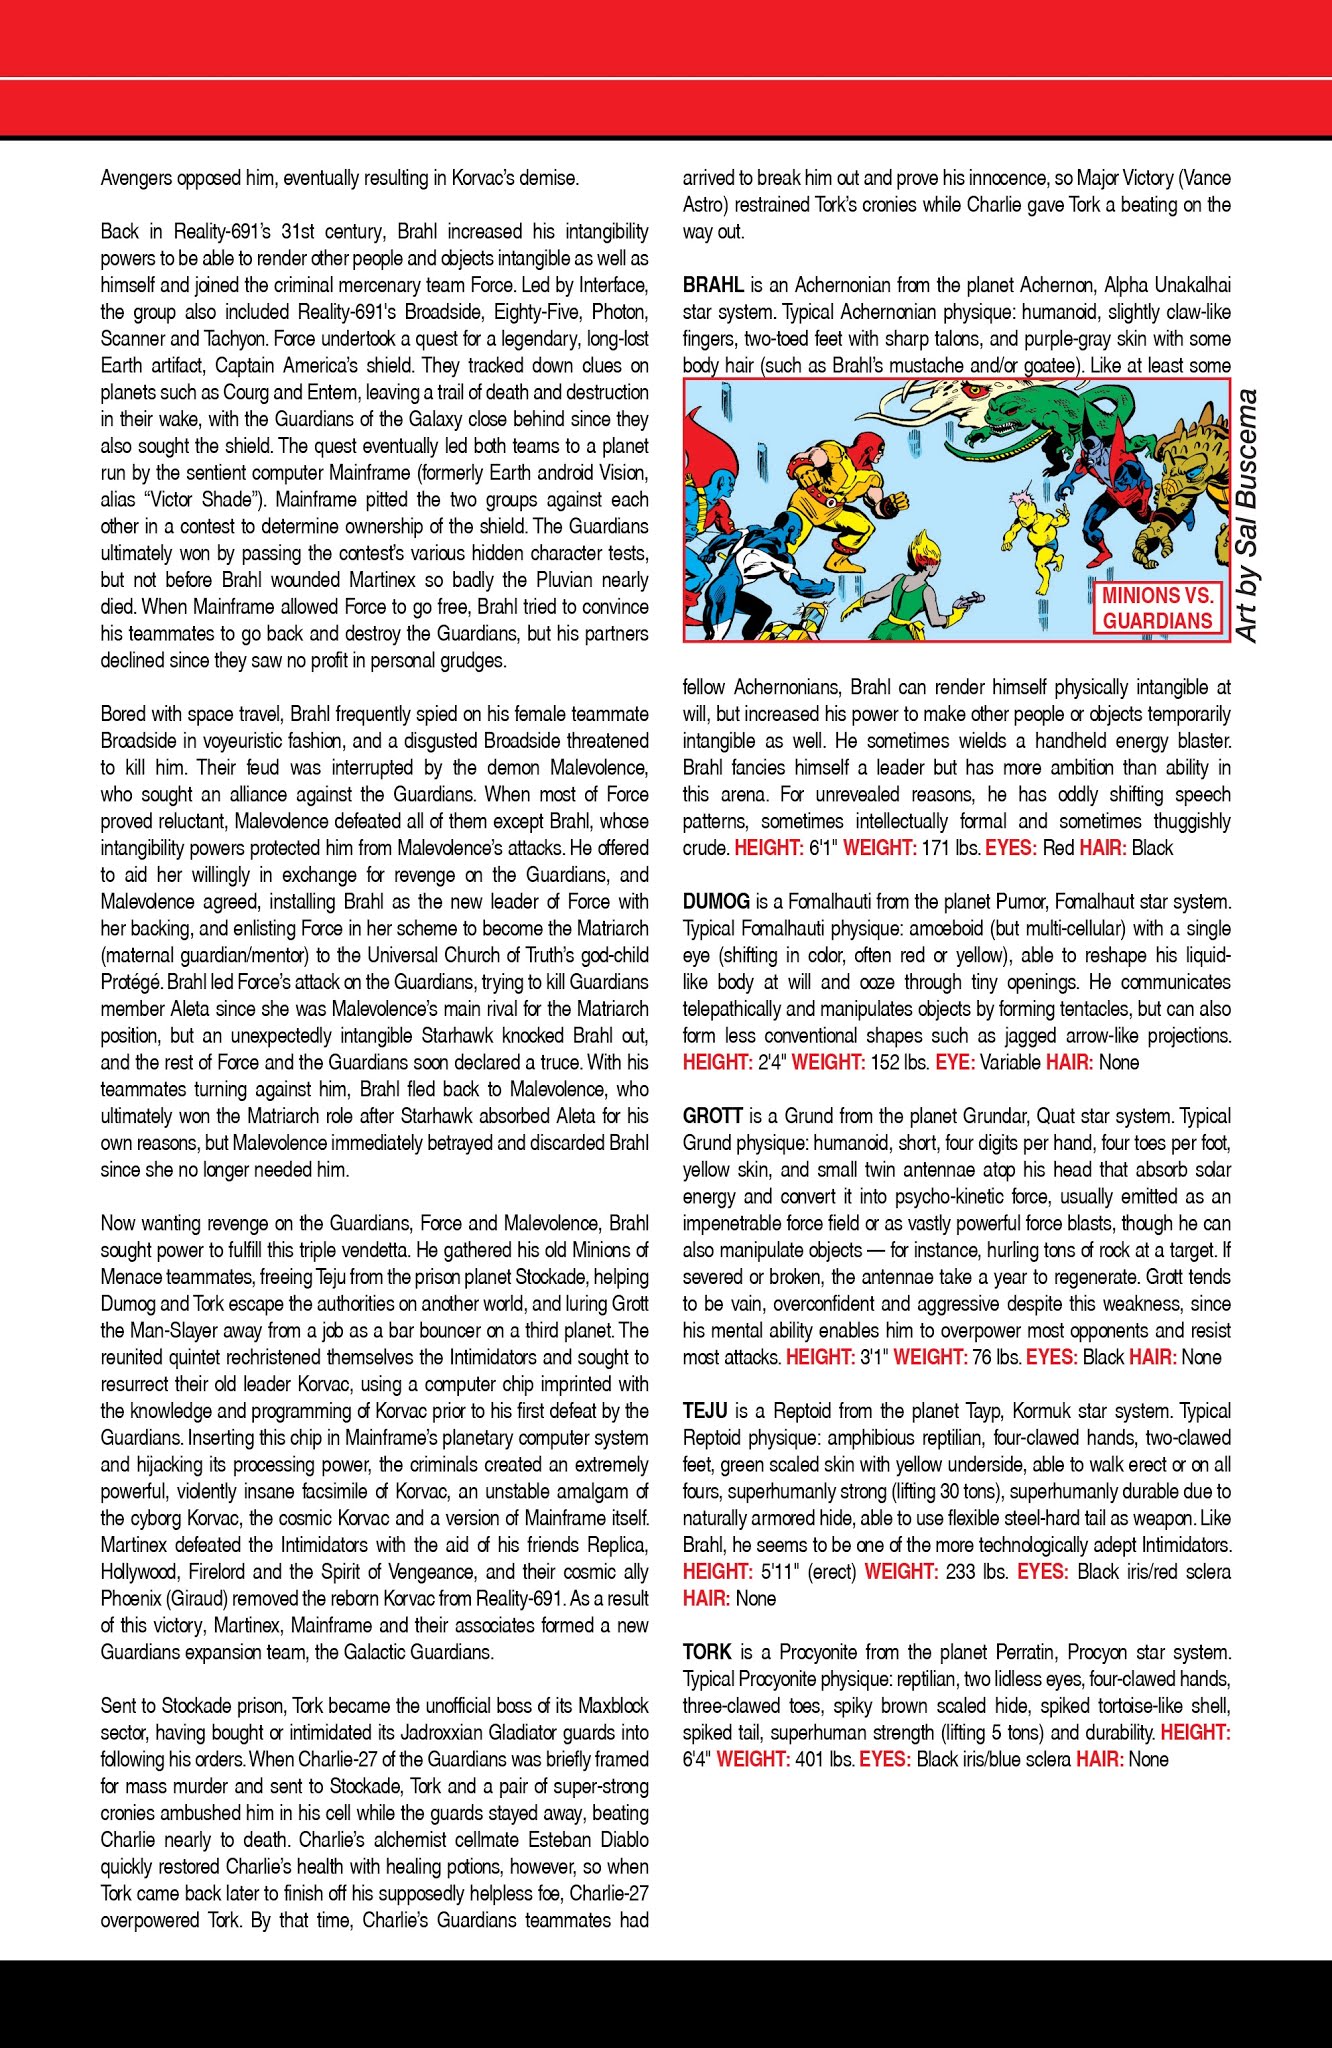 Read online Thor: Asgard's Avenger comic -  Issue # Full - 28